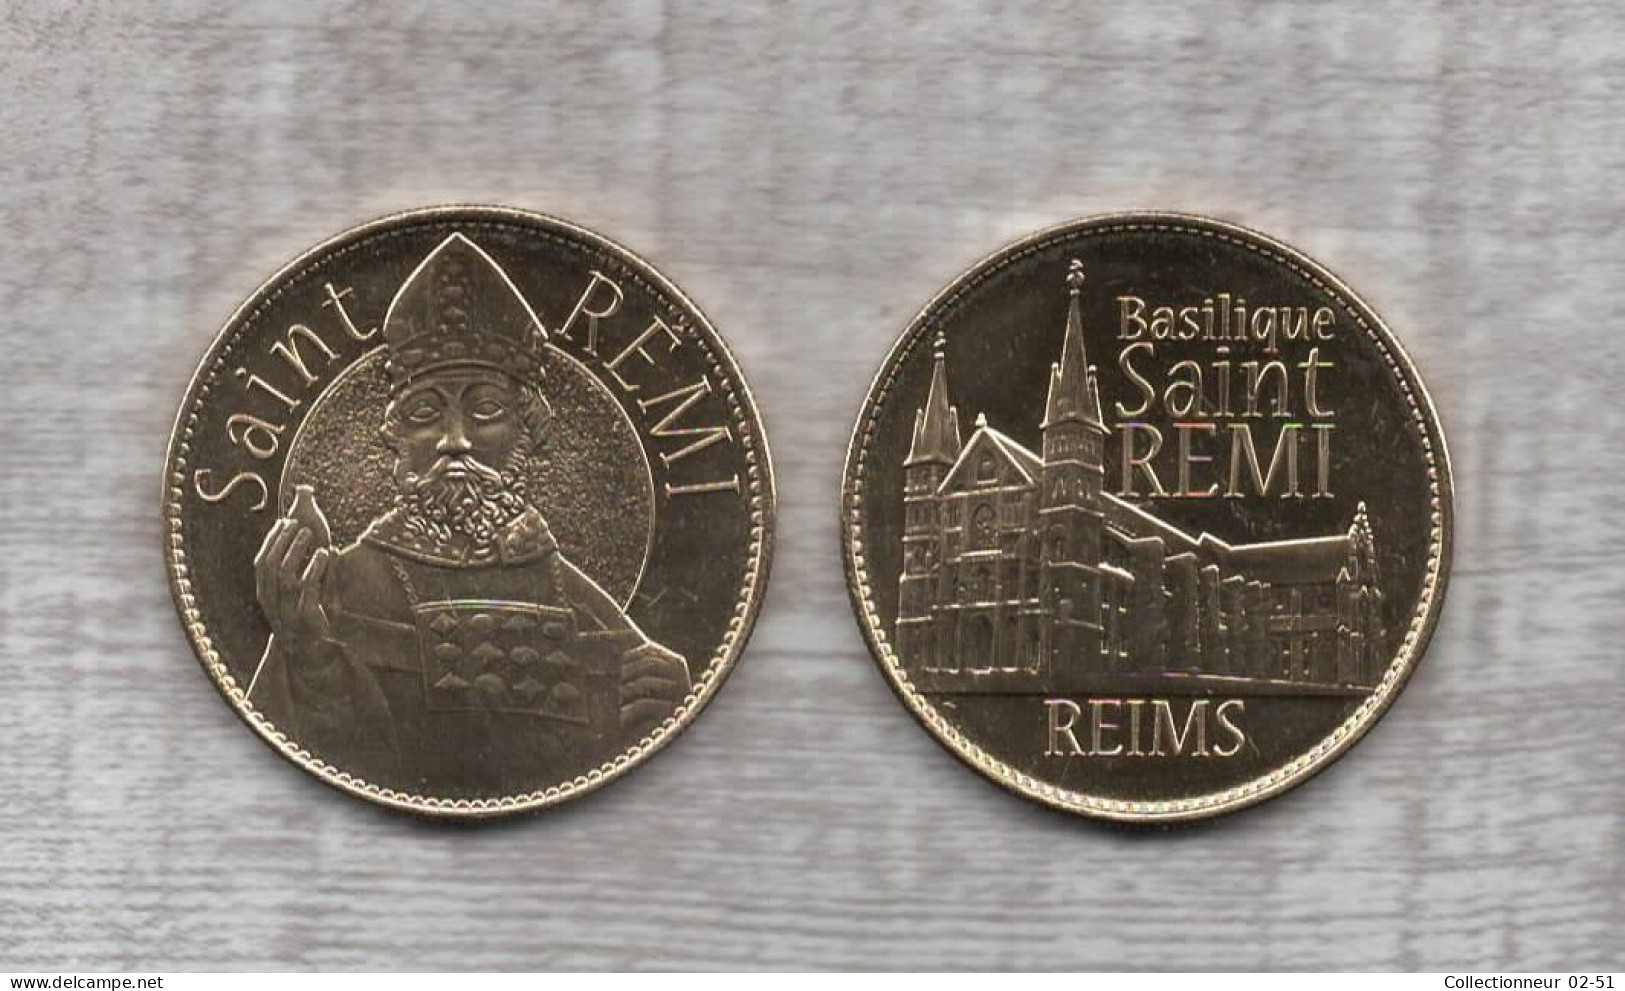 Médaille Arthus Bertrand : Basilique Saint-Rémi - Reims - - Zonder Datum